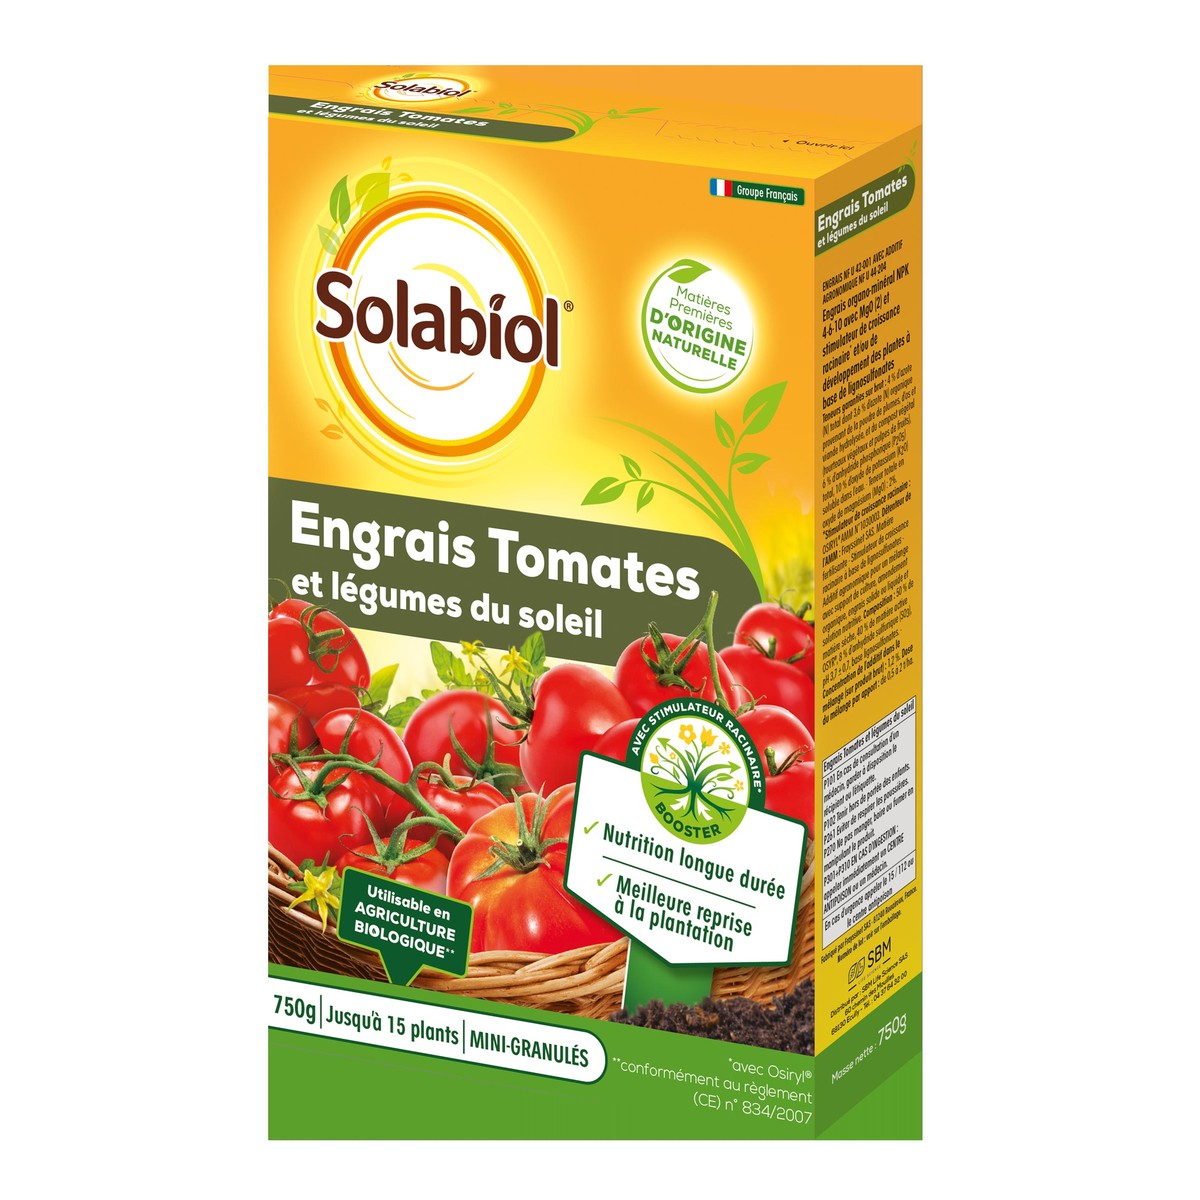   Engrais Tomates Et Legumes Fruits 750G  